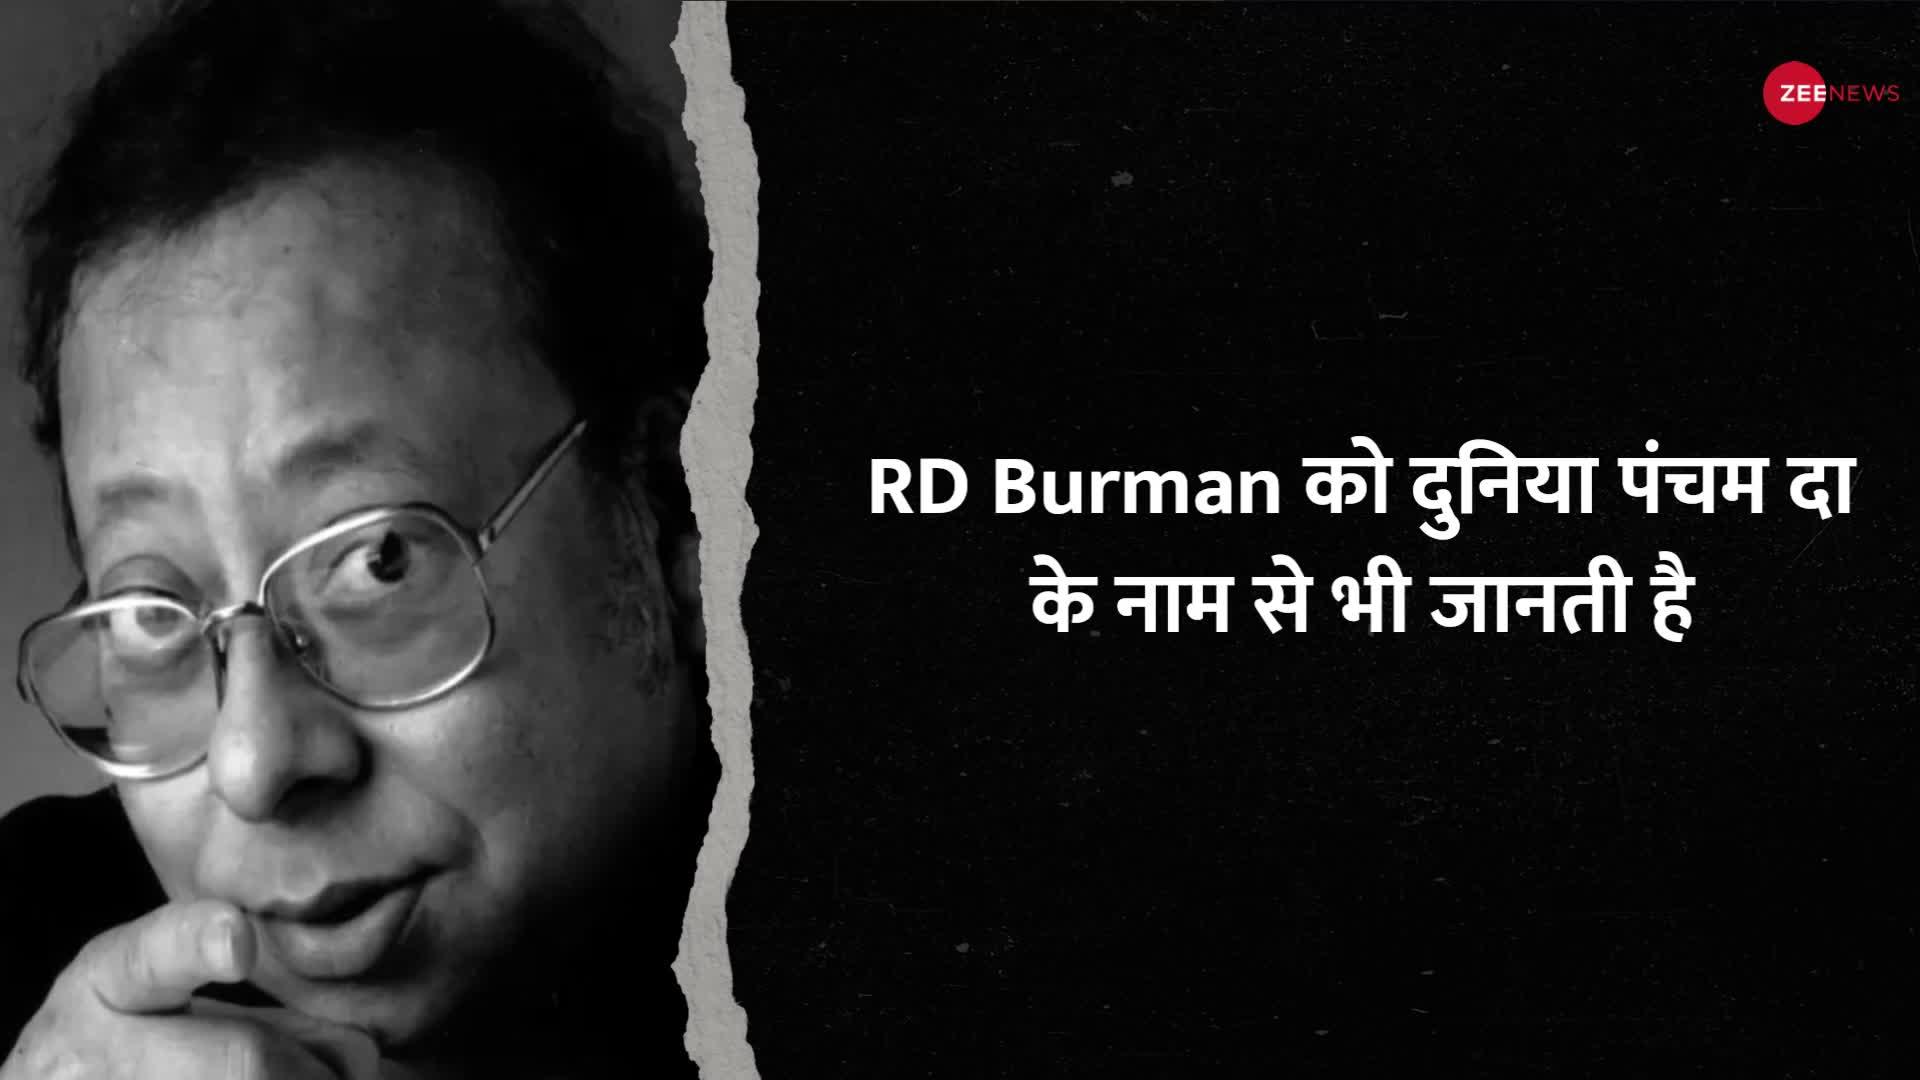 RD Burman Birth Anniversary: सुरों का सरताज आरडी बर्मन, अस्पताल में ही बना डाली कई धुन